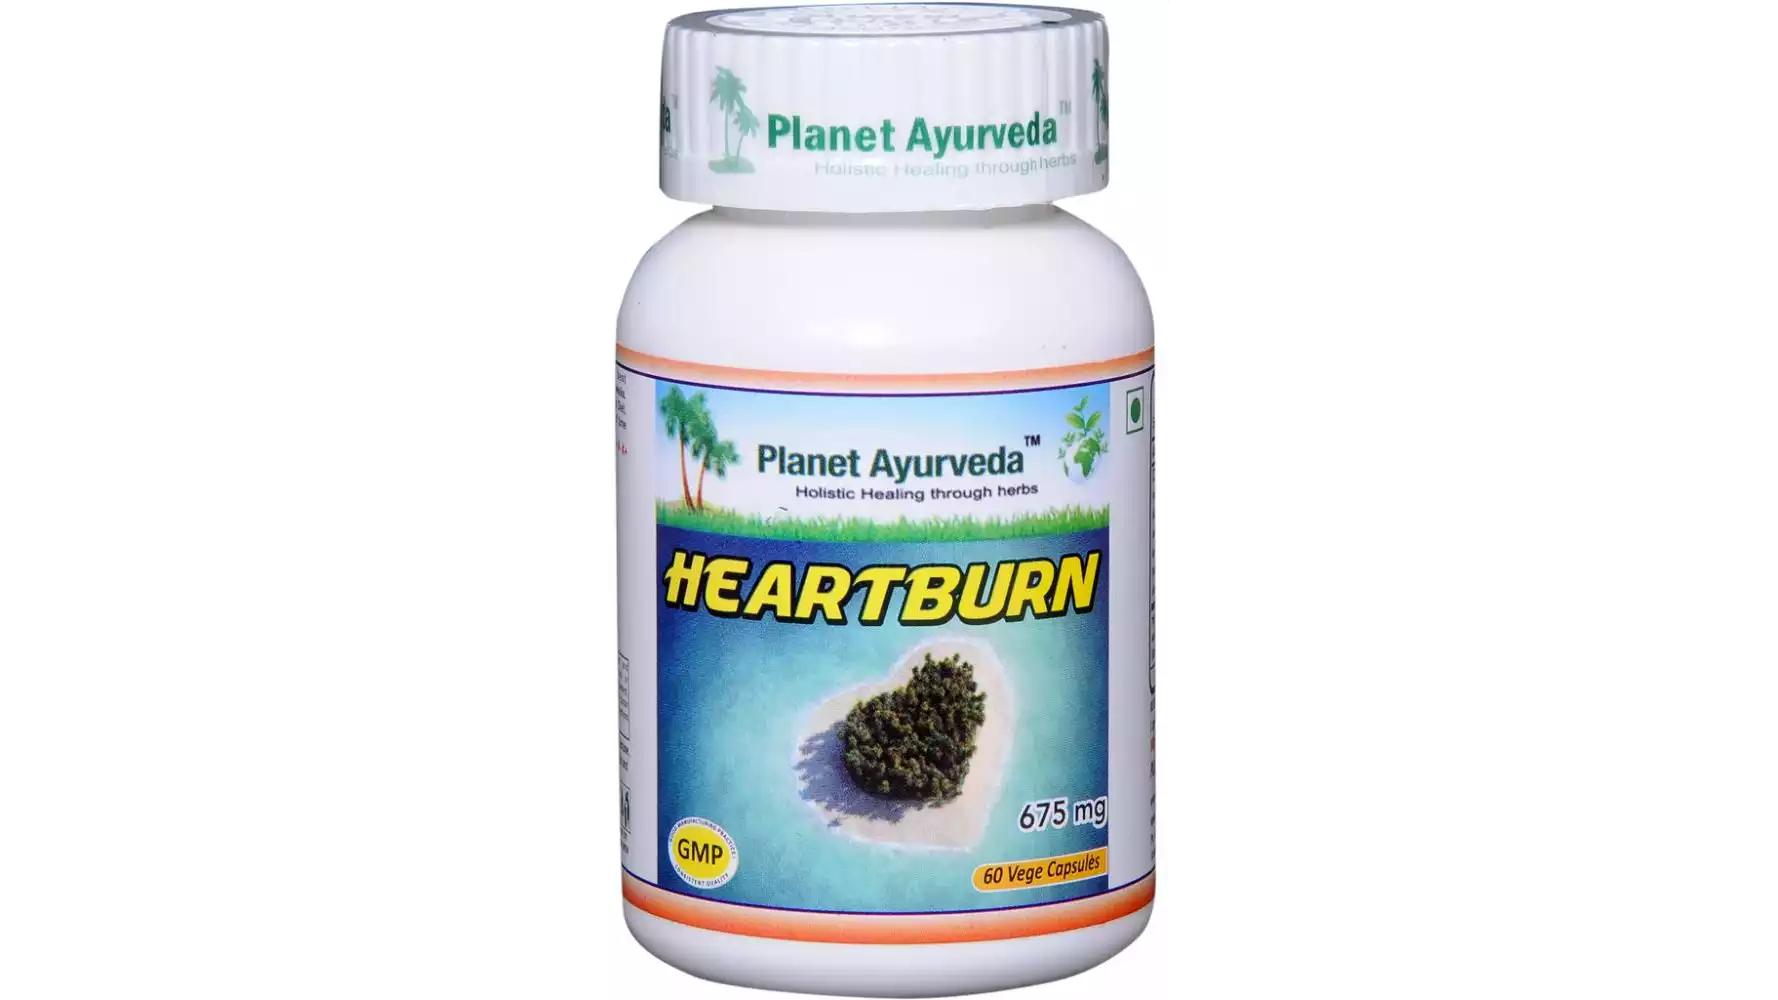 Planet Ayurveda Heart Burn Capsule (60caps)